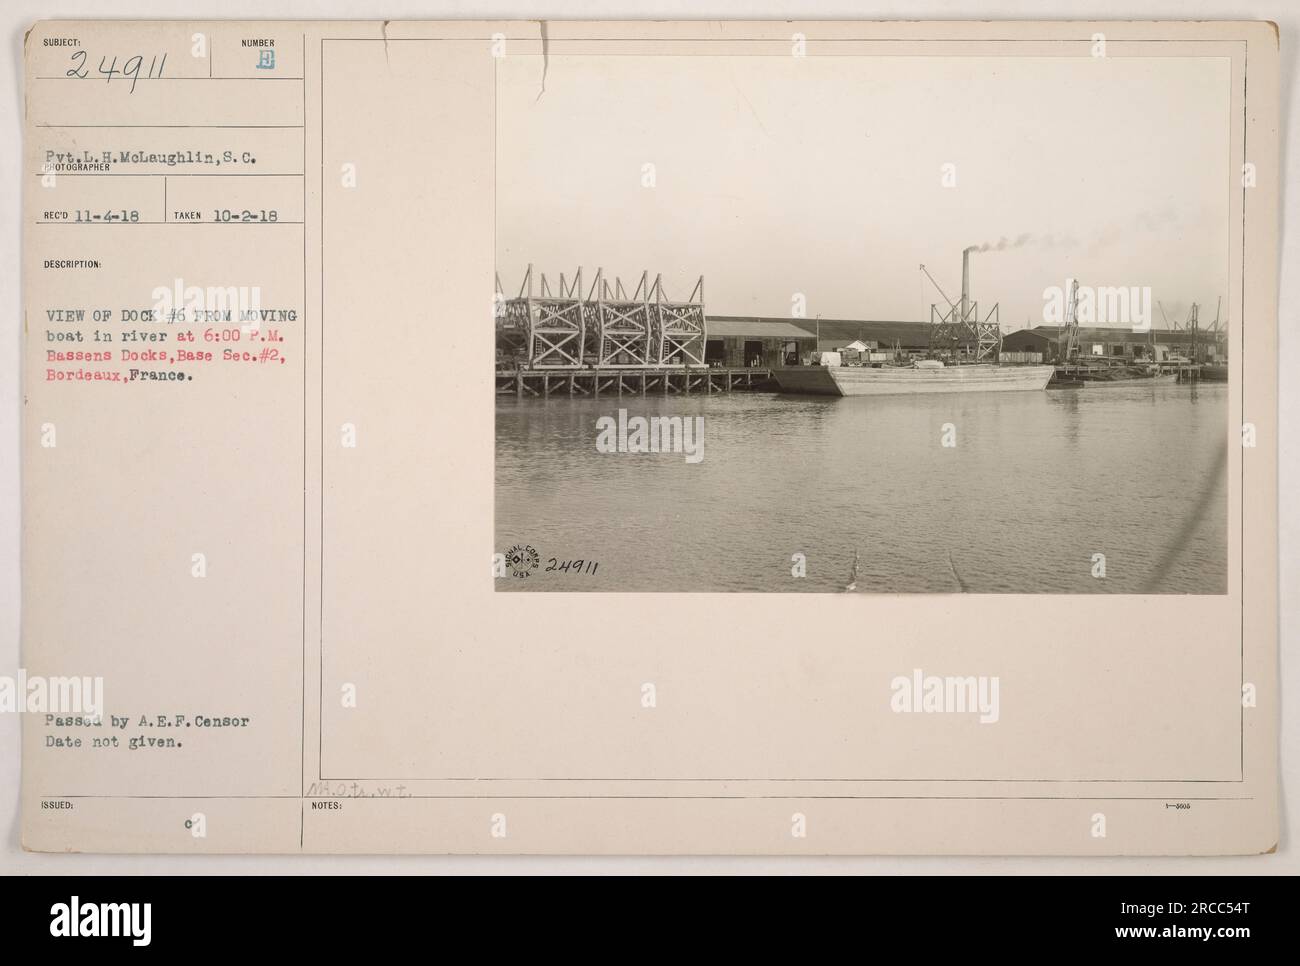 Une photographie prise le 2 octobre 1918 montre une vue du quai no 6 depuis un bateau en mouvement dans la rivière à 6:00 H. L'emplacement est Bassens Docks, Section de base #2, à Bordeaux, France. La photographie a été prise par Pvt. L.H. McLaughlin, 8C, et la date à laquelle il a été adopté par l'A.E.F. Le censeur est inconnu. La photographie est incluse dans la série 24911. Banque D'Images